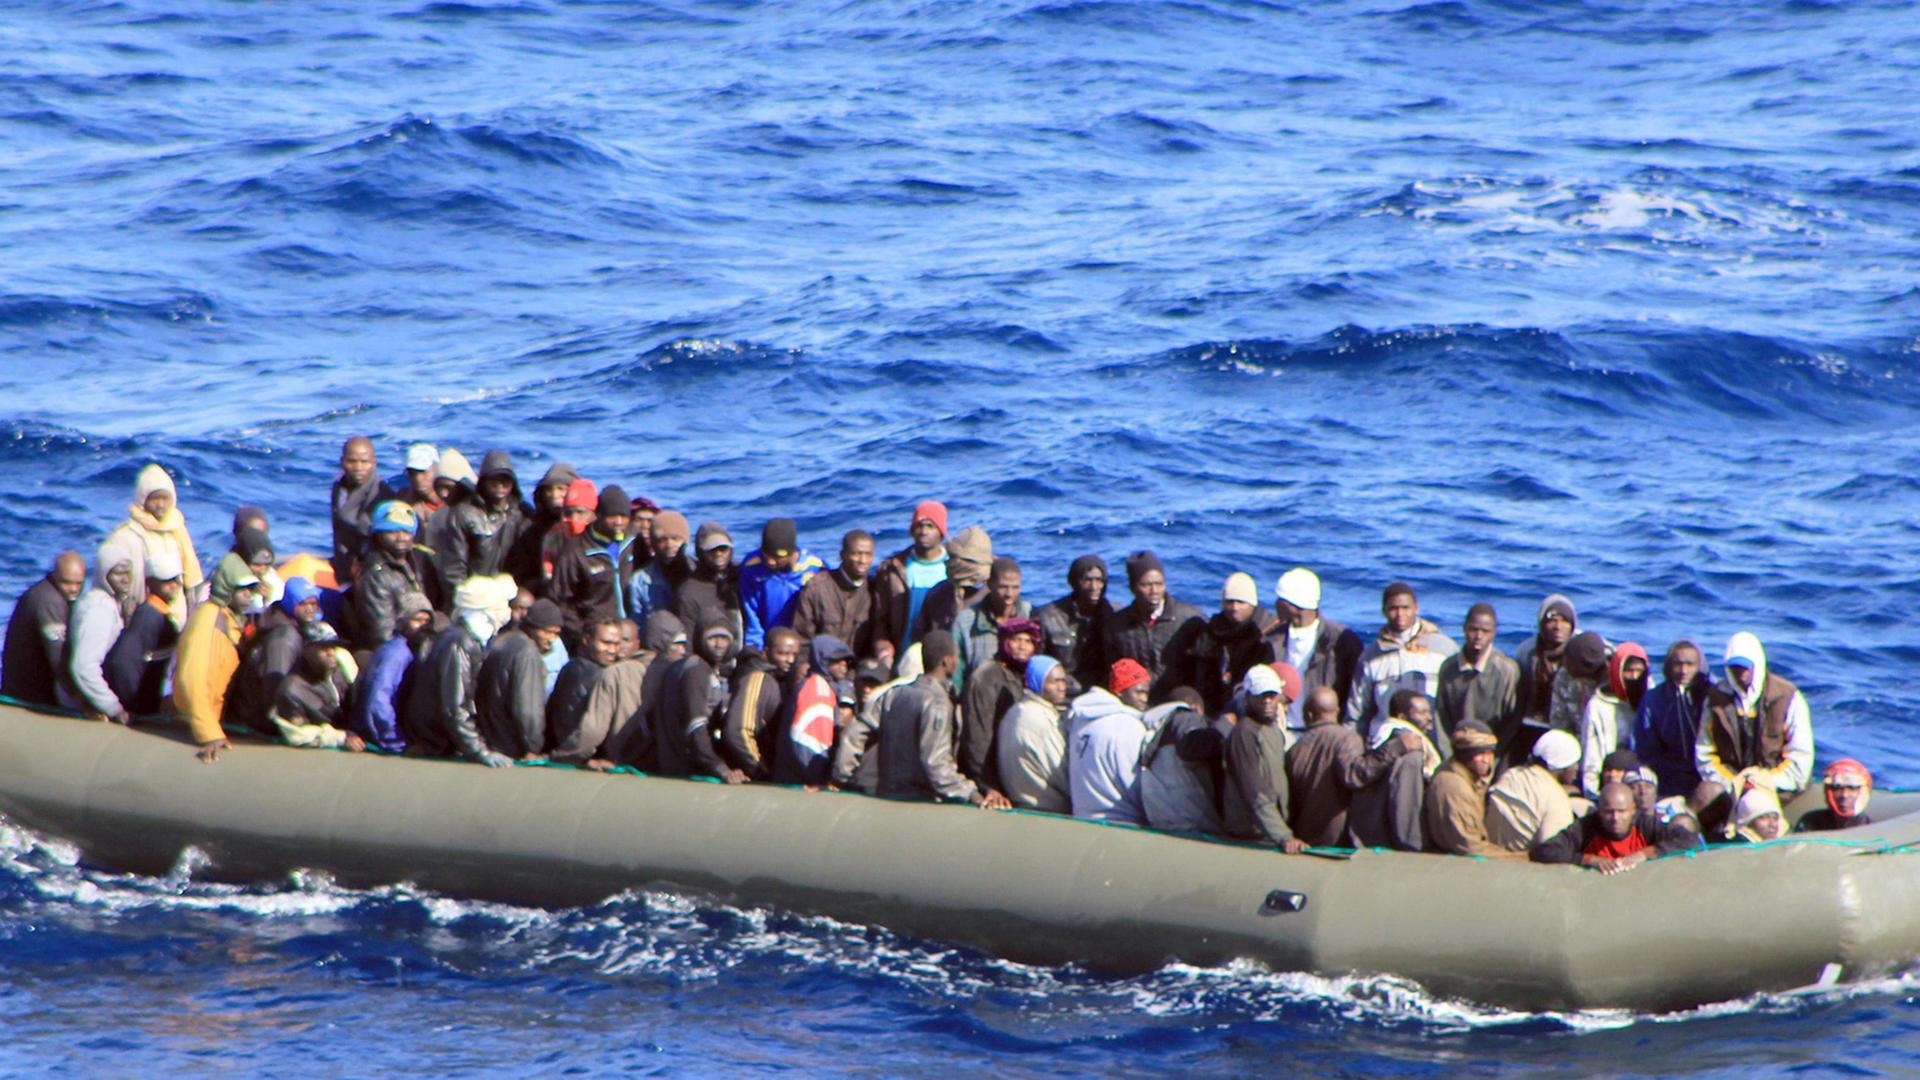 Ein überfülltes großes Schlauchboot mit mehreren Dutzend Menschen treibt auf dem Wasser.